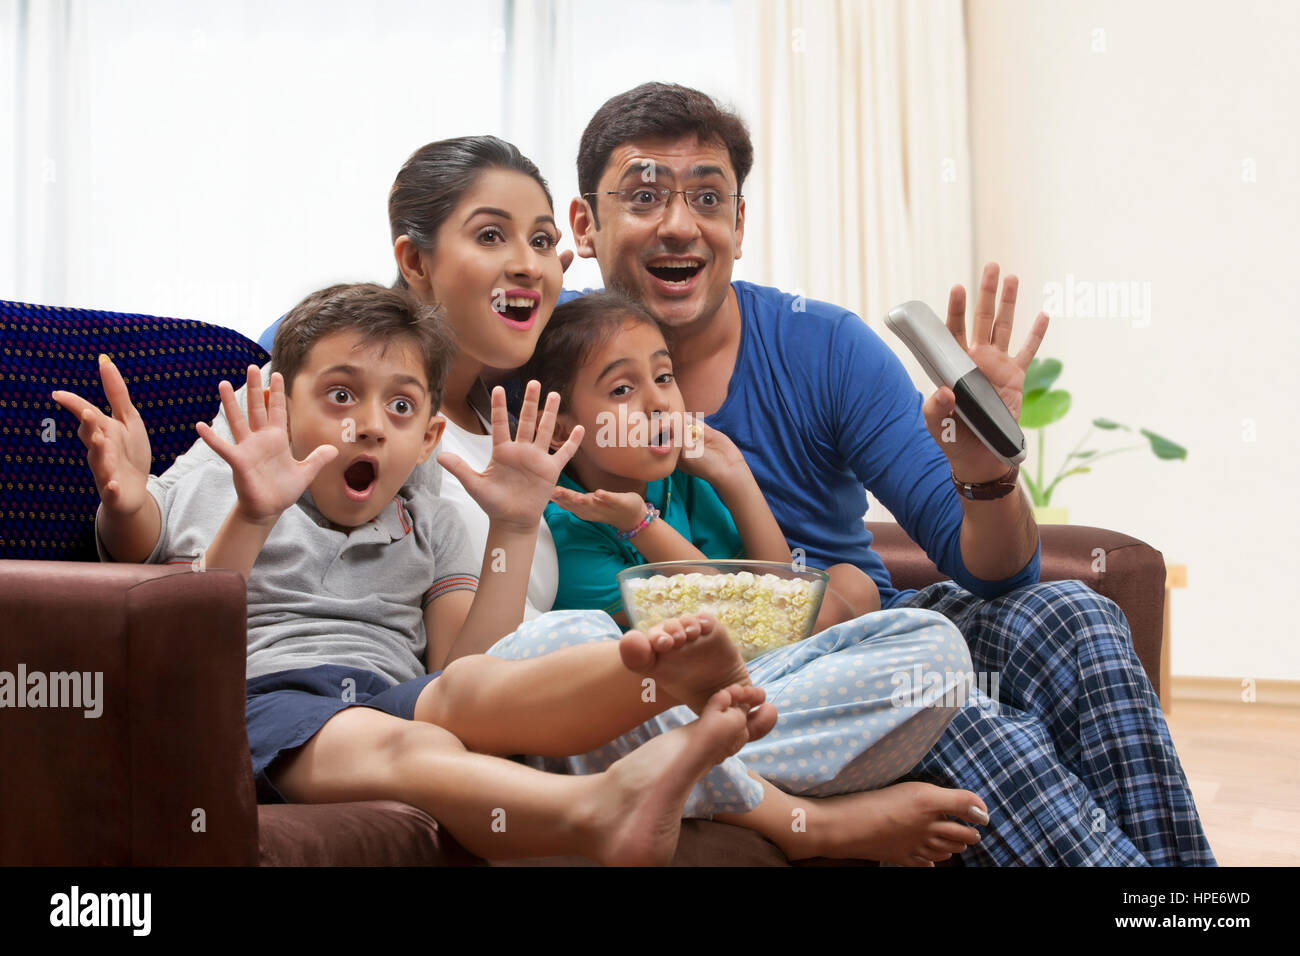 Famille en pyjama à regarder la télévision et eating popcorn Banque D'Images